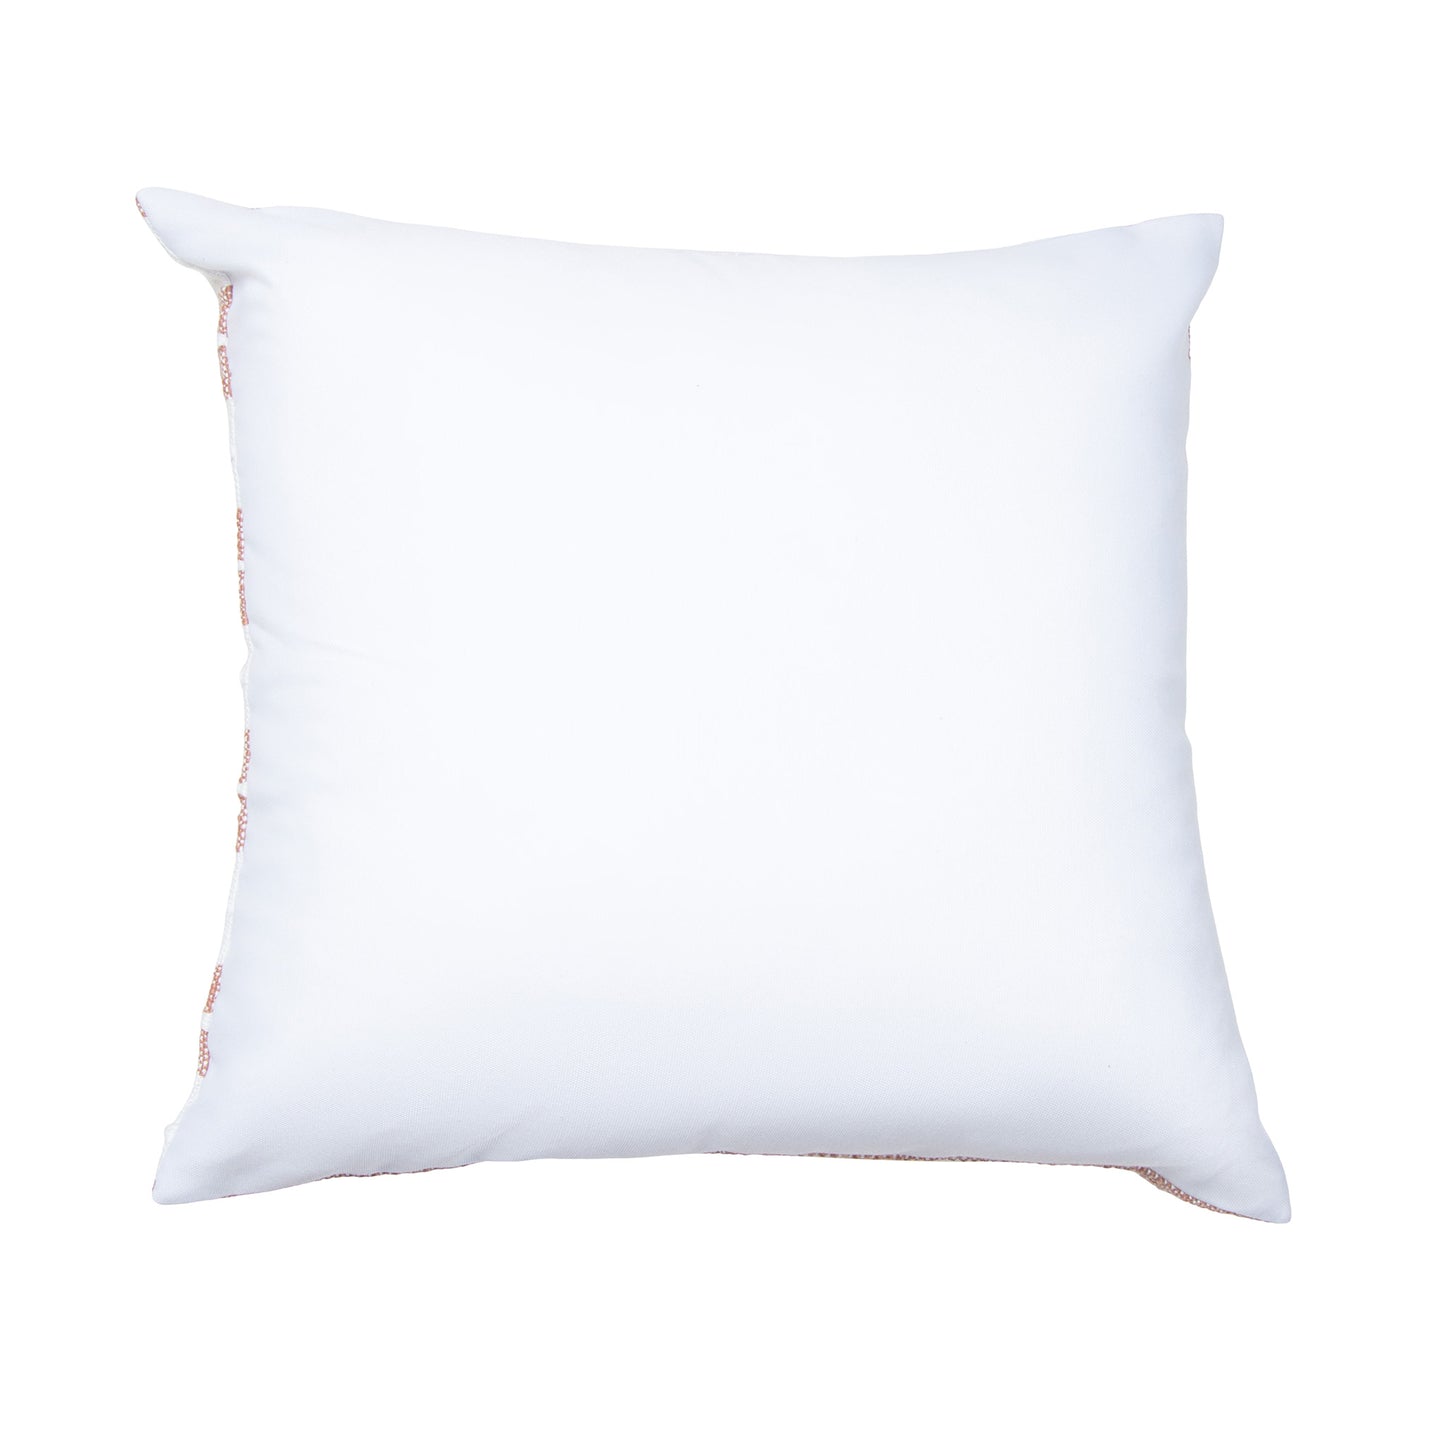 Romy 18X18" Handwoven Striped Indoor/Outdoor Throw Pillow